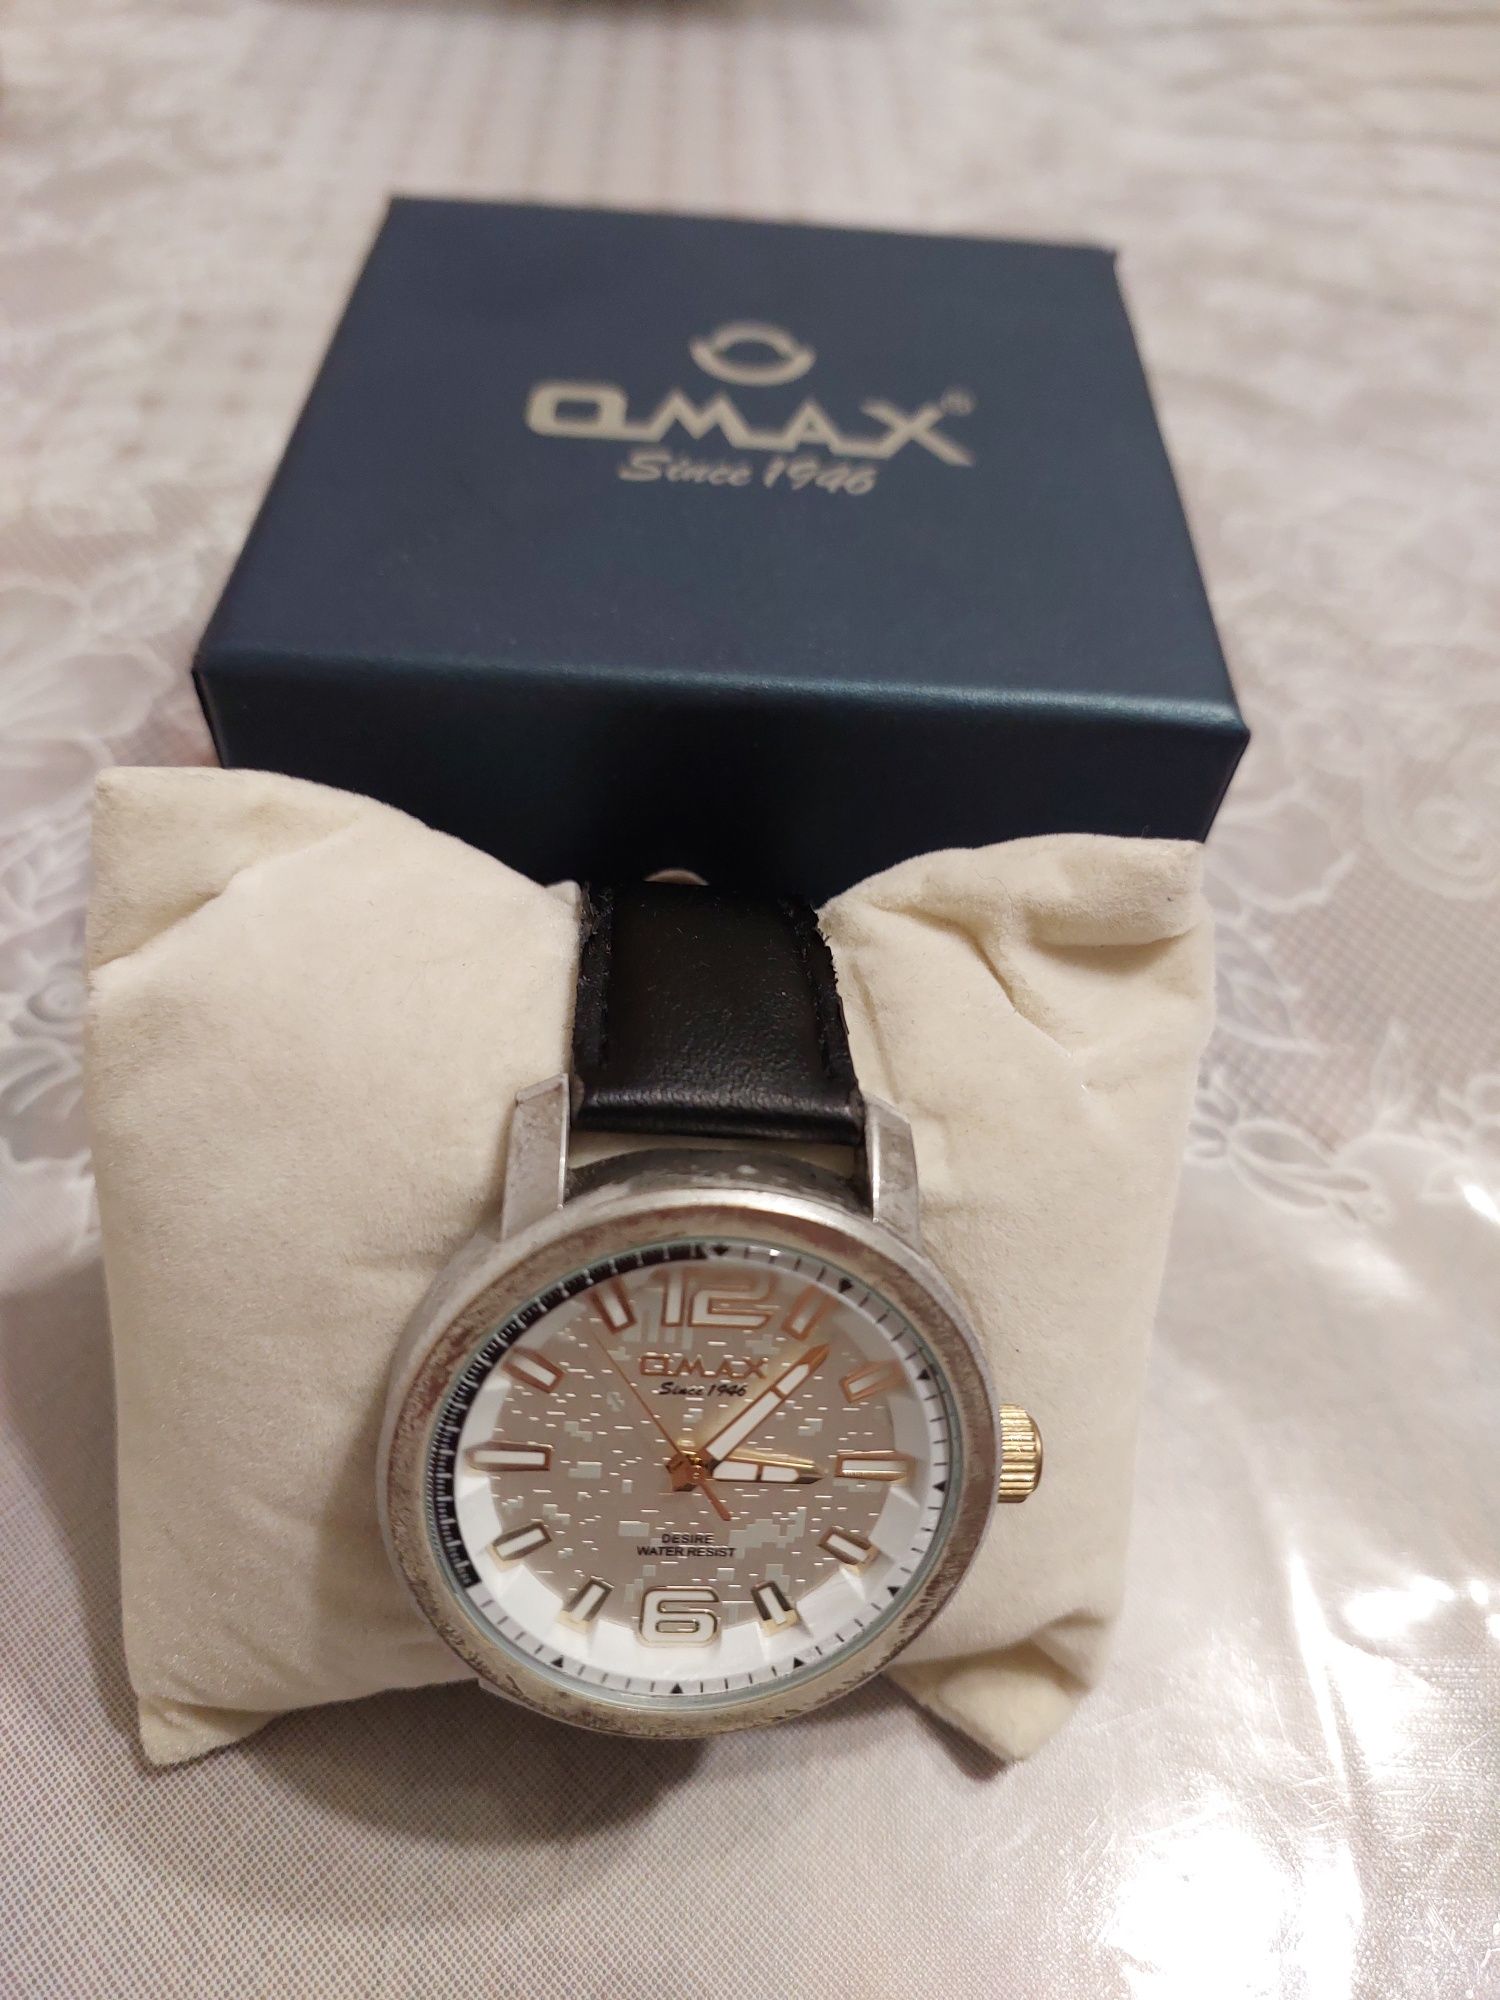 Продам часы Omax Since 1946